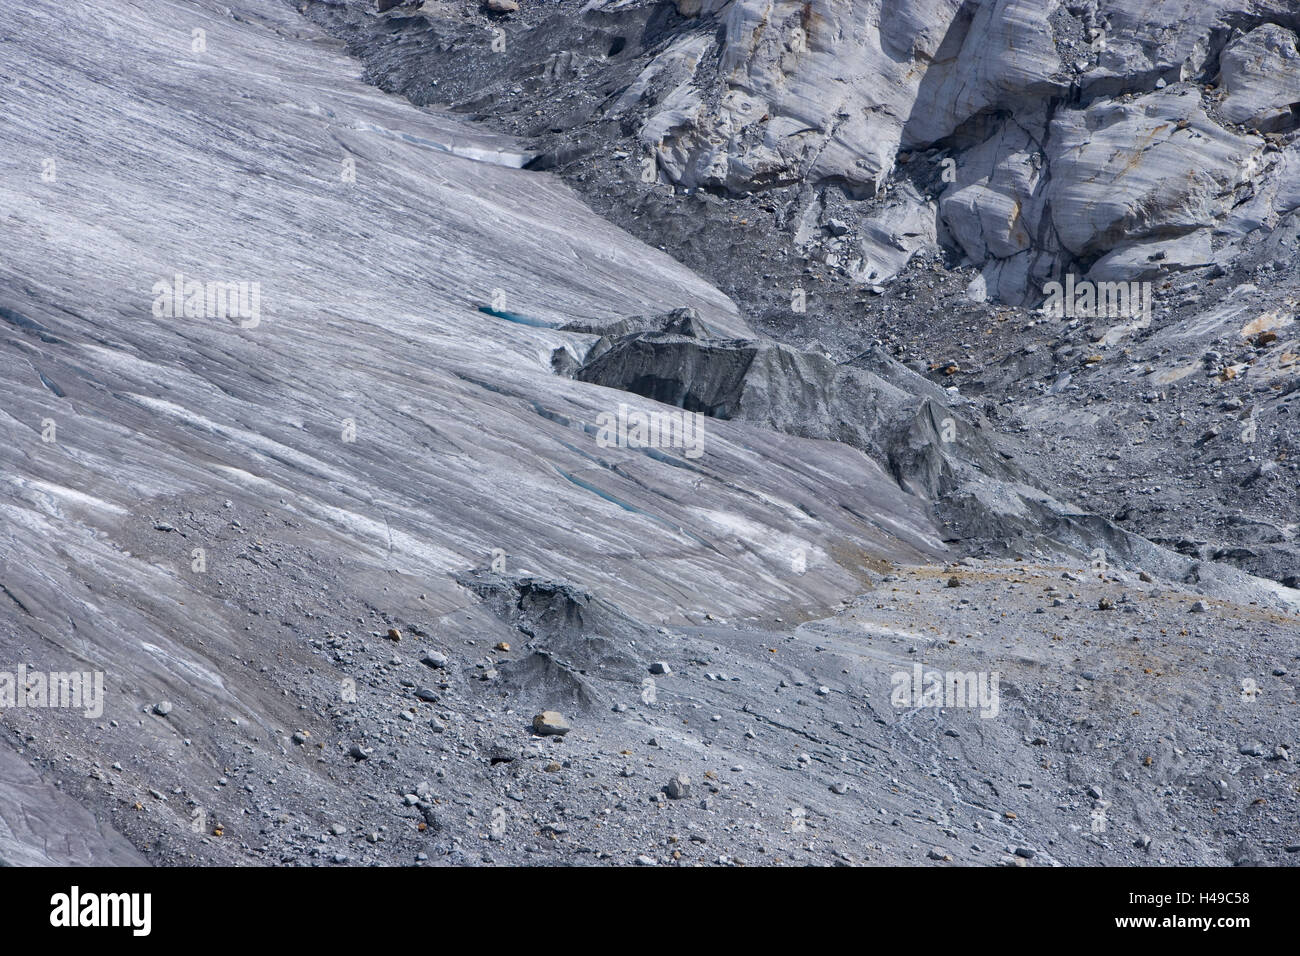 La Svizzera, Vallese, cerio-debolmente, foundling del ghiacciaio, il ghiacciaio fading, Foto Stock